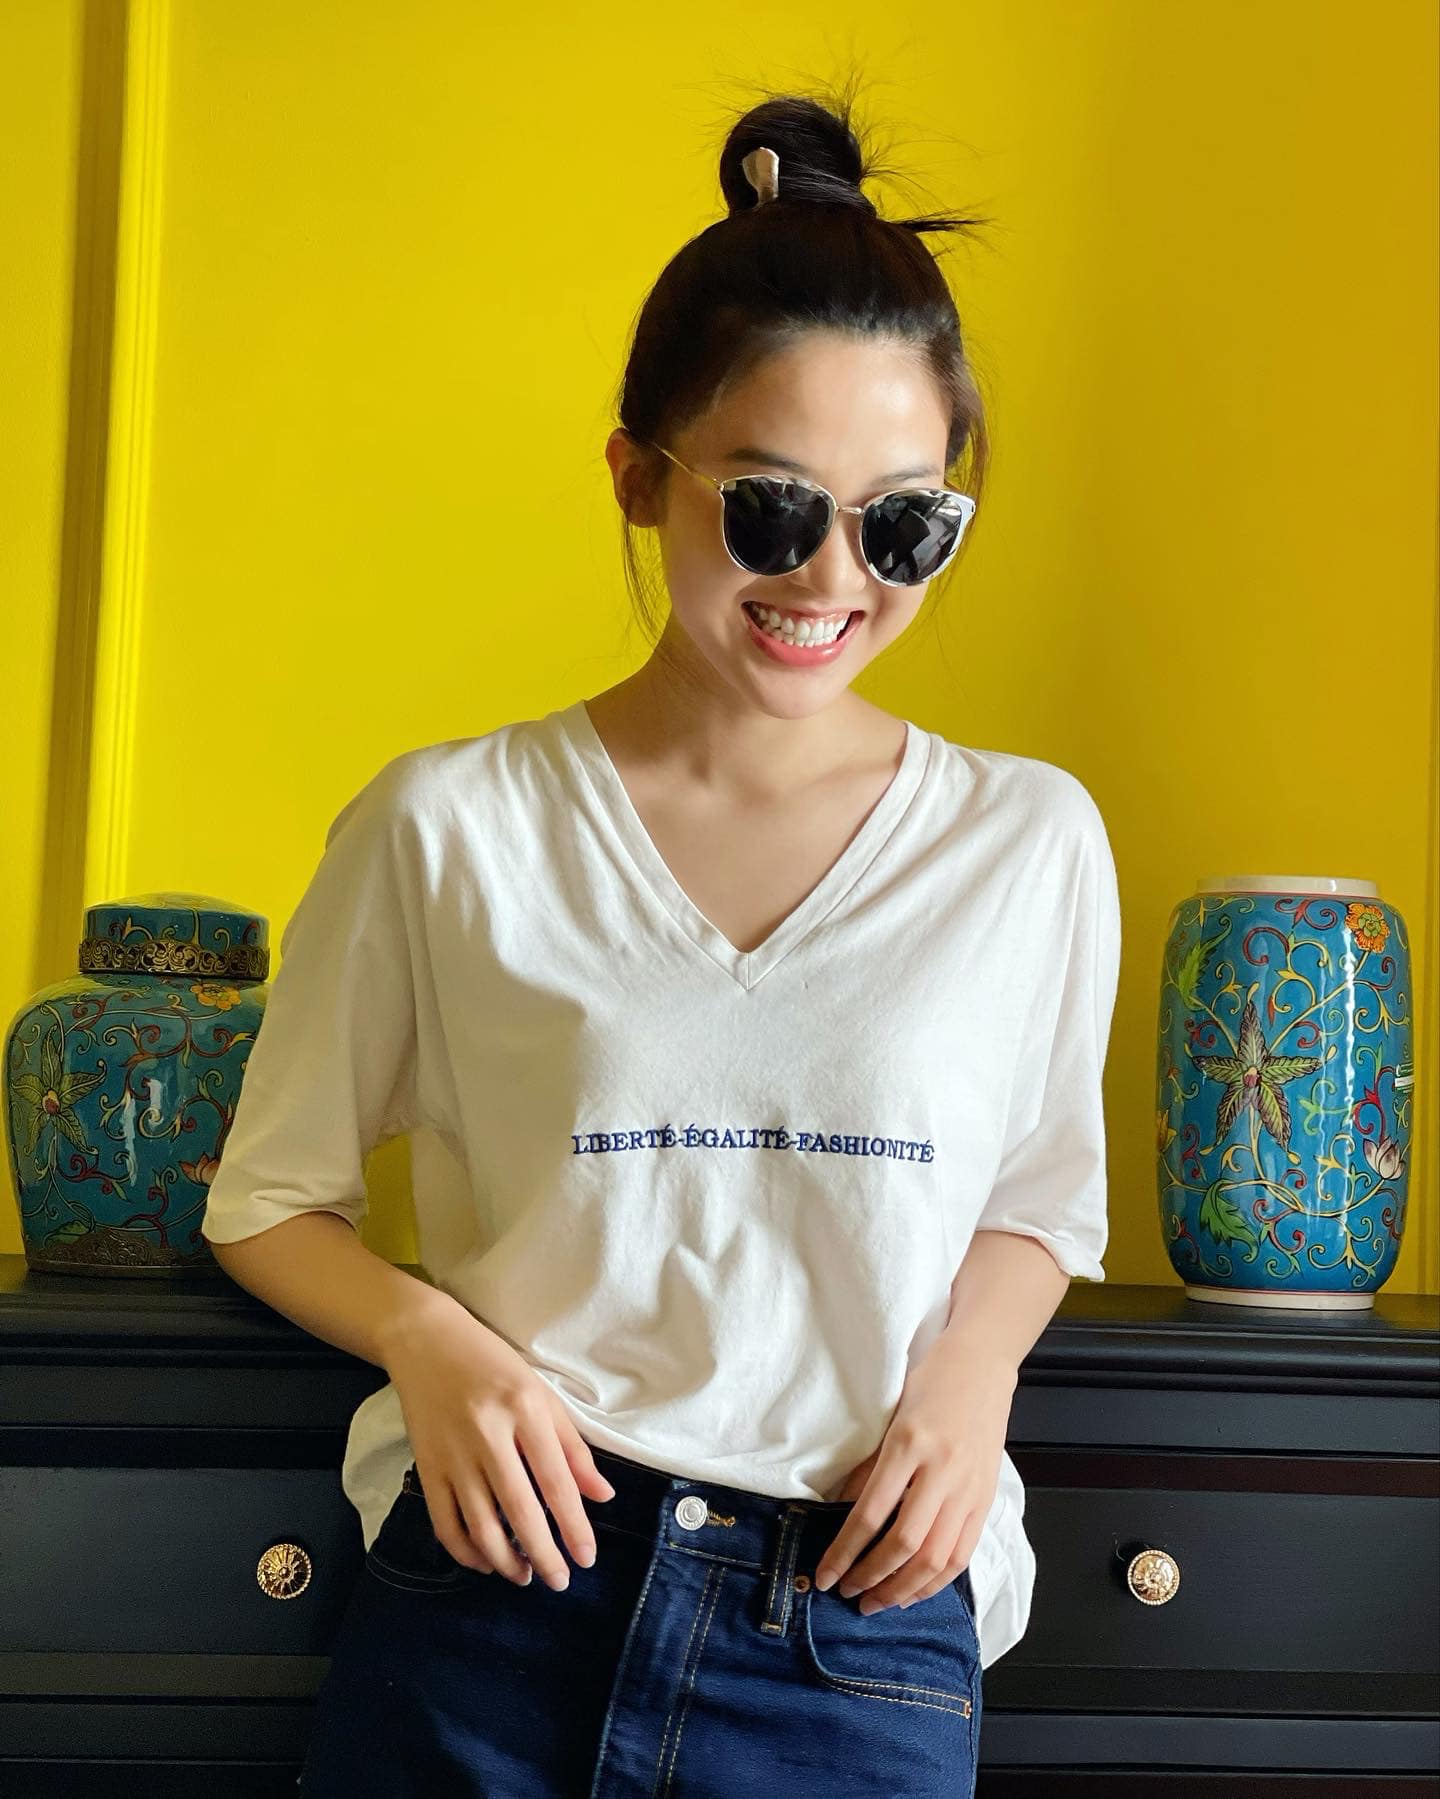 'Tiểu tam' Lương Thanh giản dị, năng động với áo thun cùng quần jean, cô mỉm cười rạng rỡ đón ngày cuối tuần thư giãn.